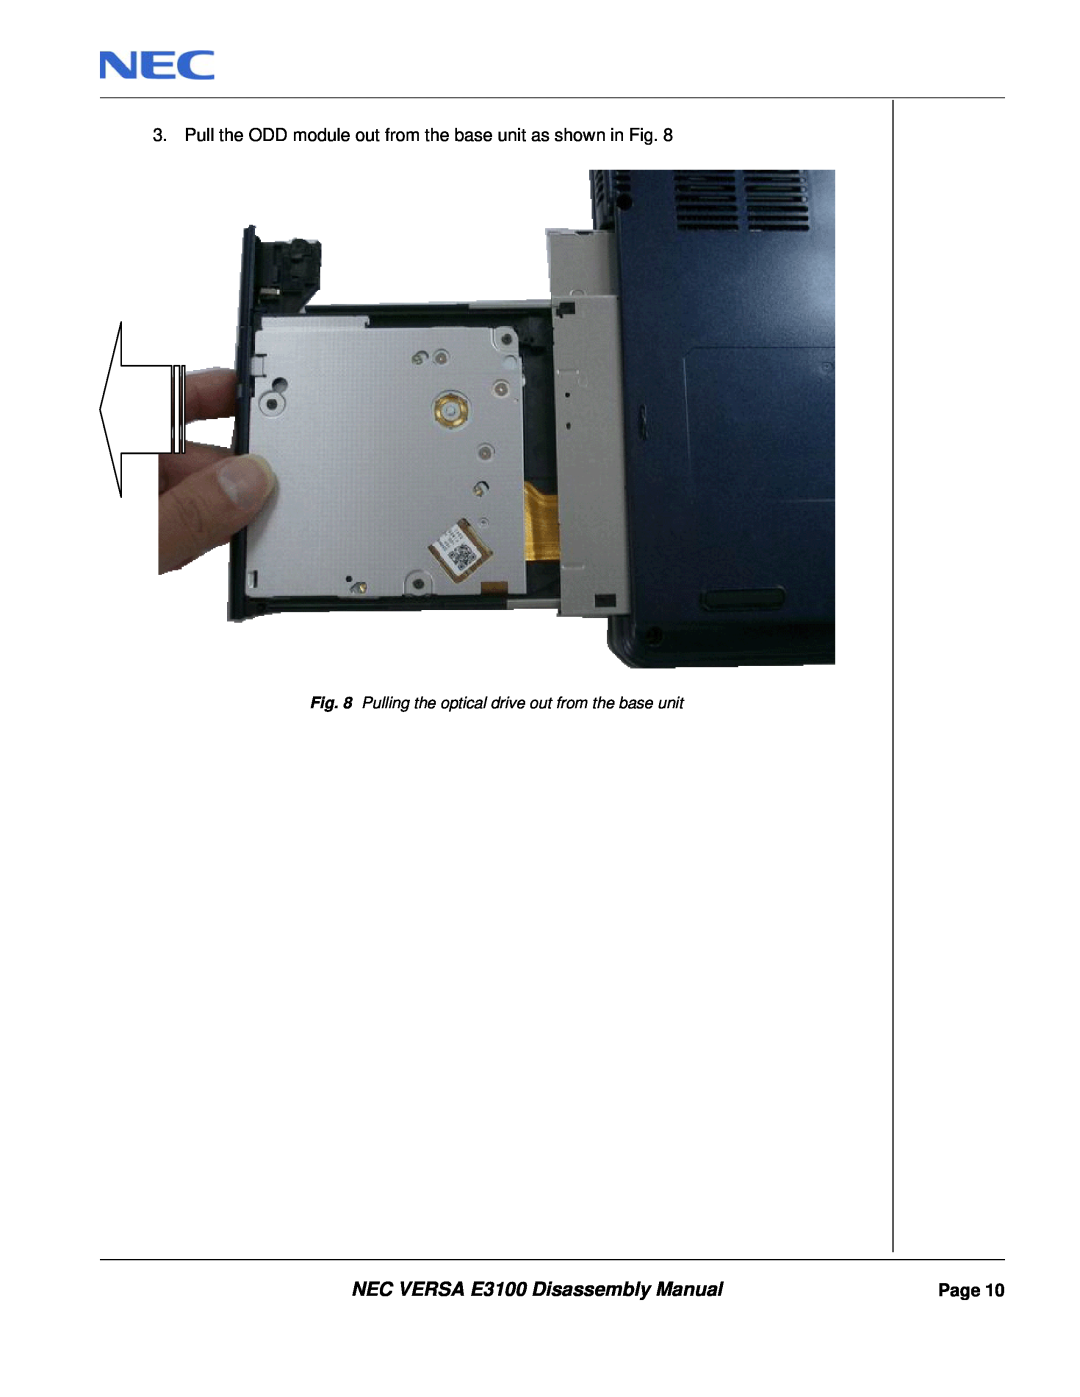 NEC manual NEC VERSA E3100 Disassembly Manual, Page 